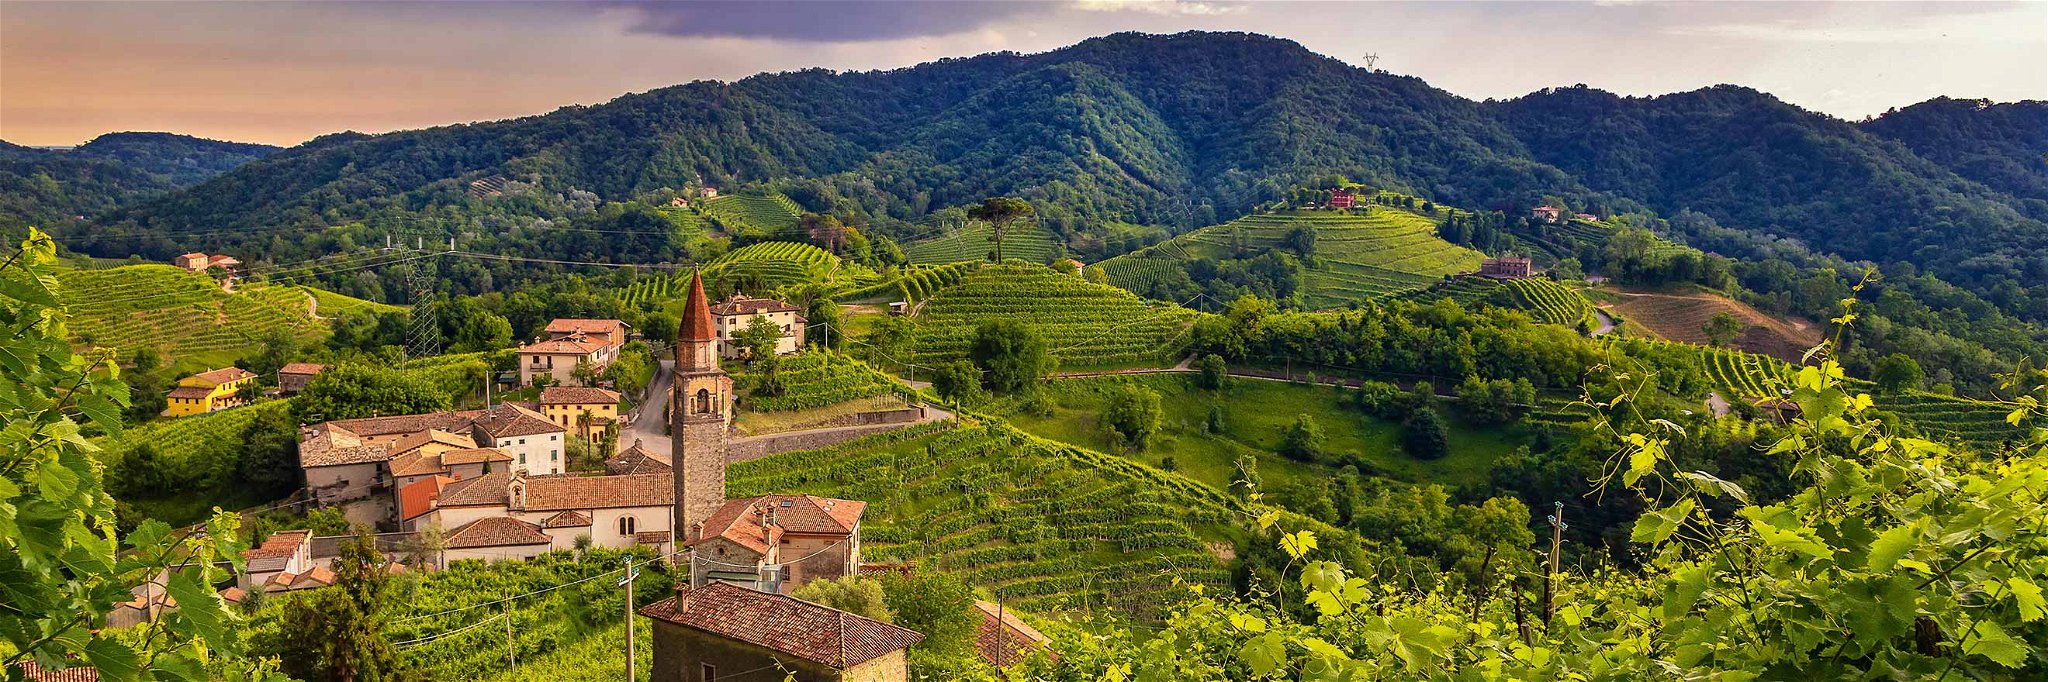 Prosecco eroberte in den letzten Jahren die Welt und machte Venetien zur führenden Schaumweinregion Italiens.